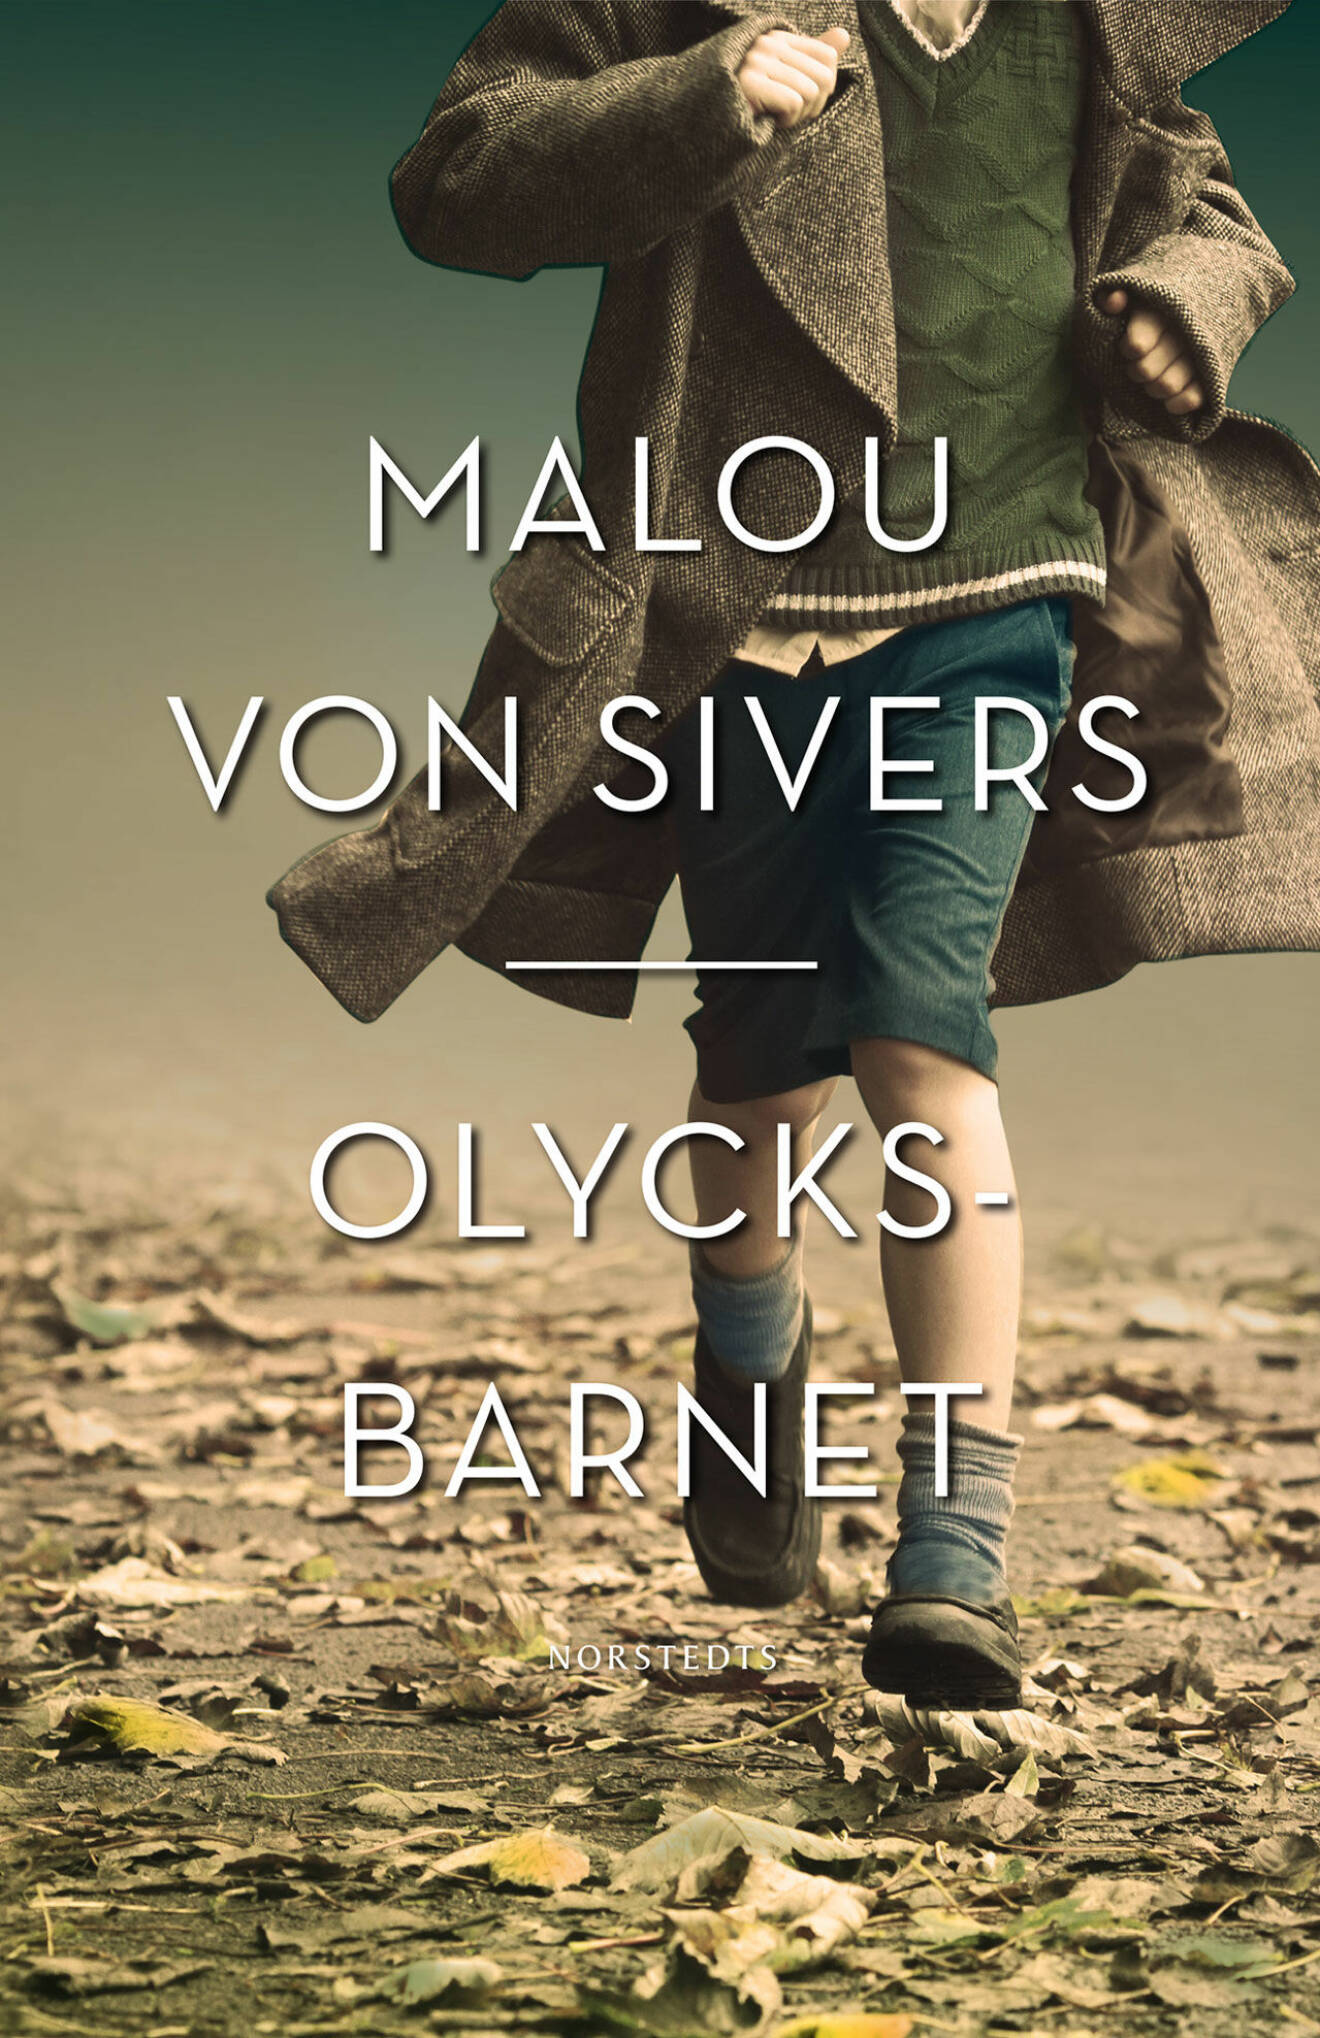 Malou von Siwers nya bok Olycksbarnet. 